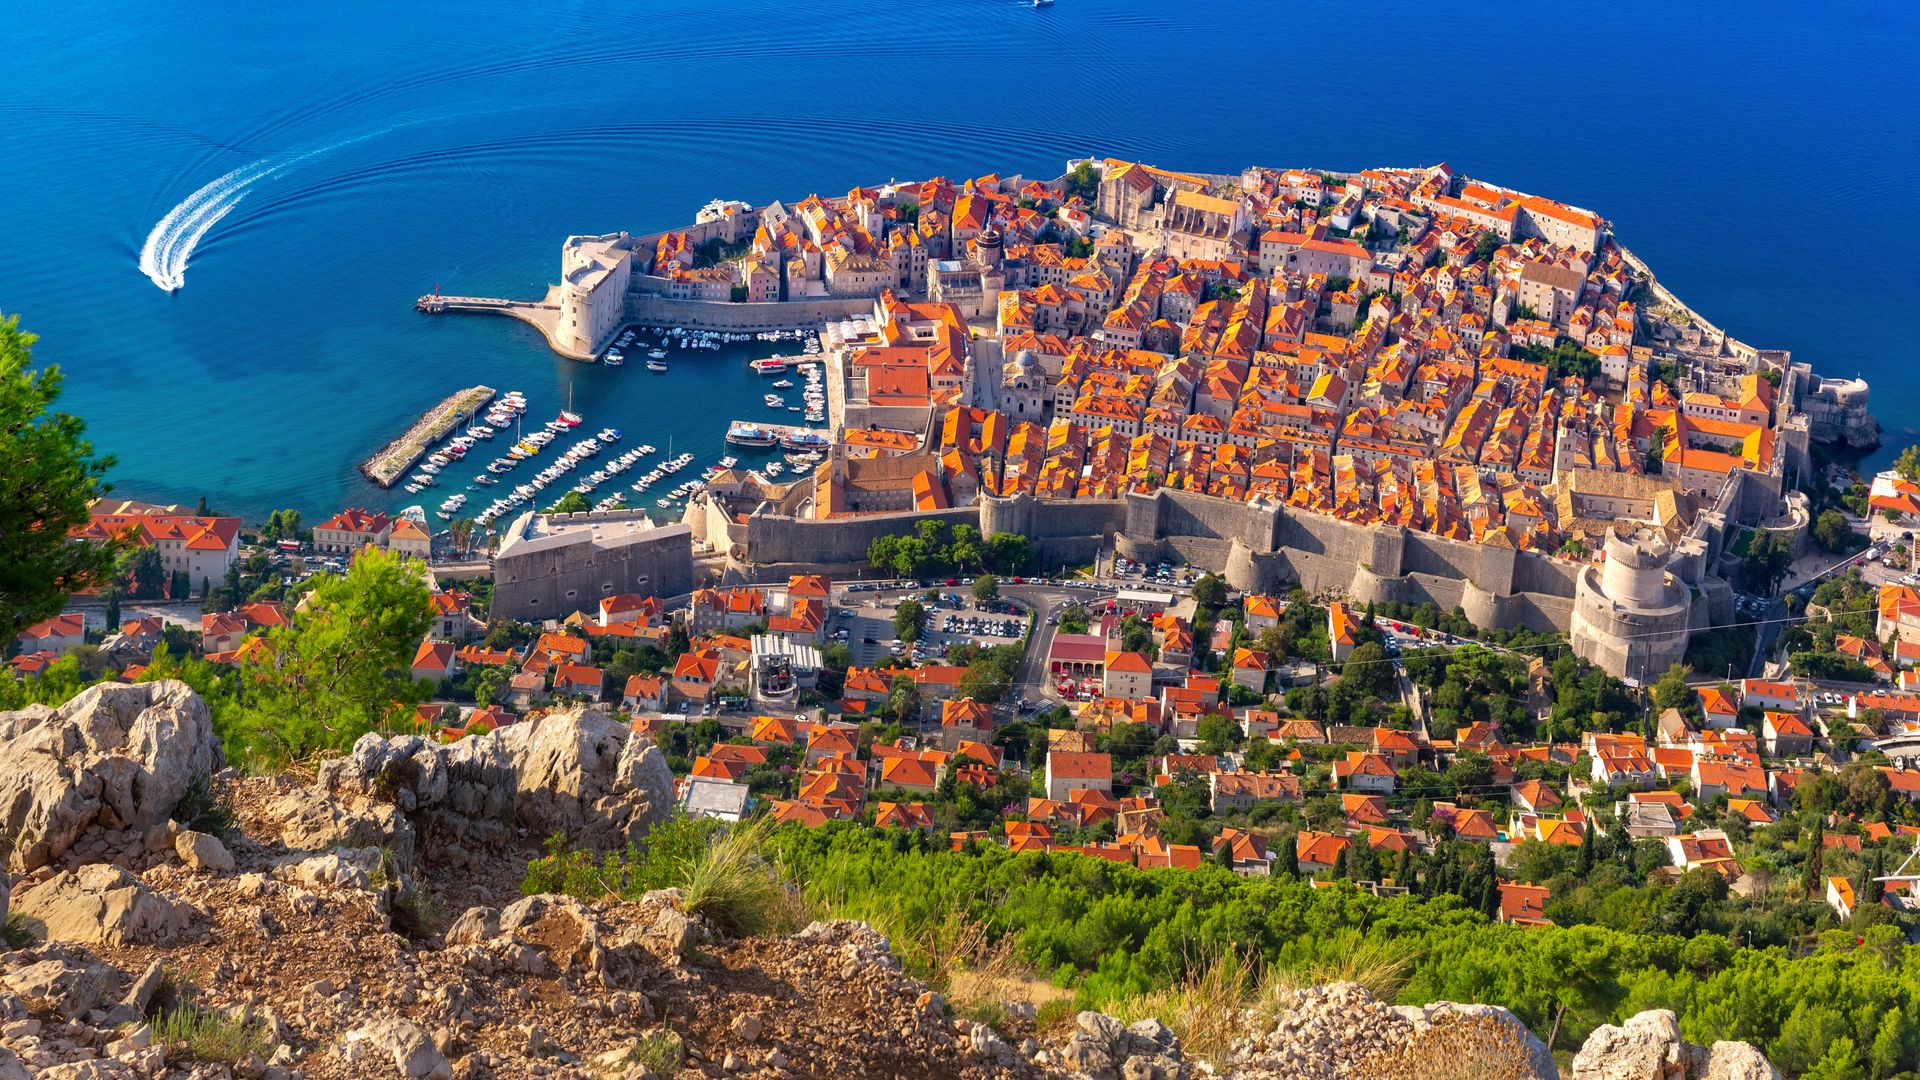 Vista aérea de la ciudad amurallada de Dubrovnik